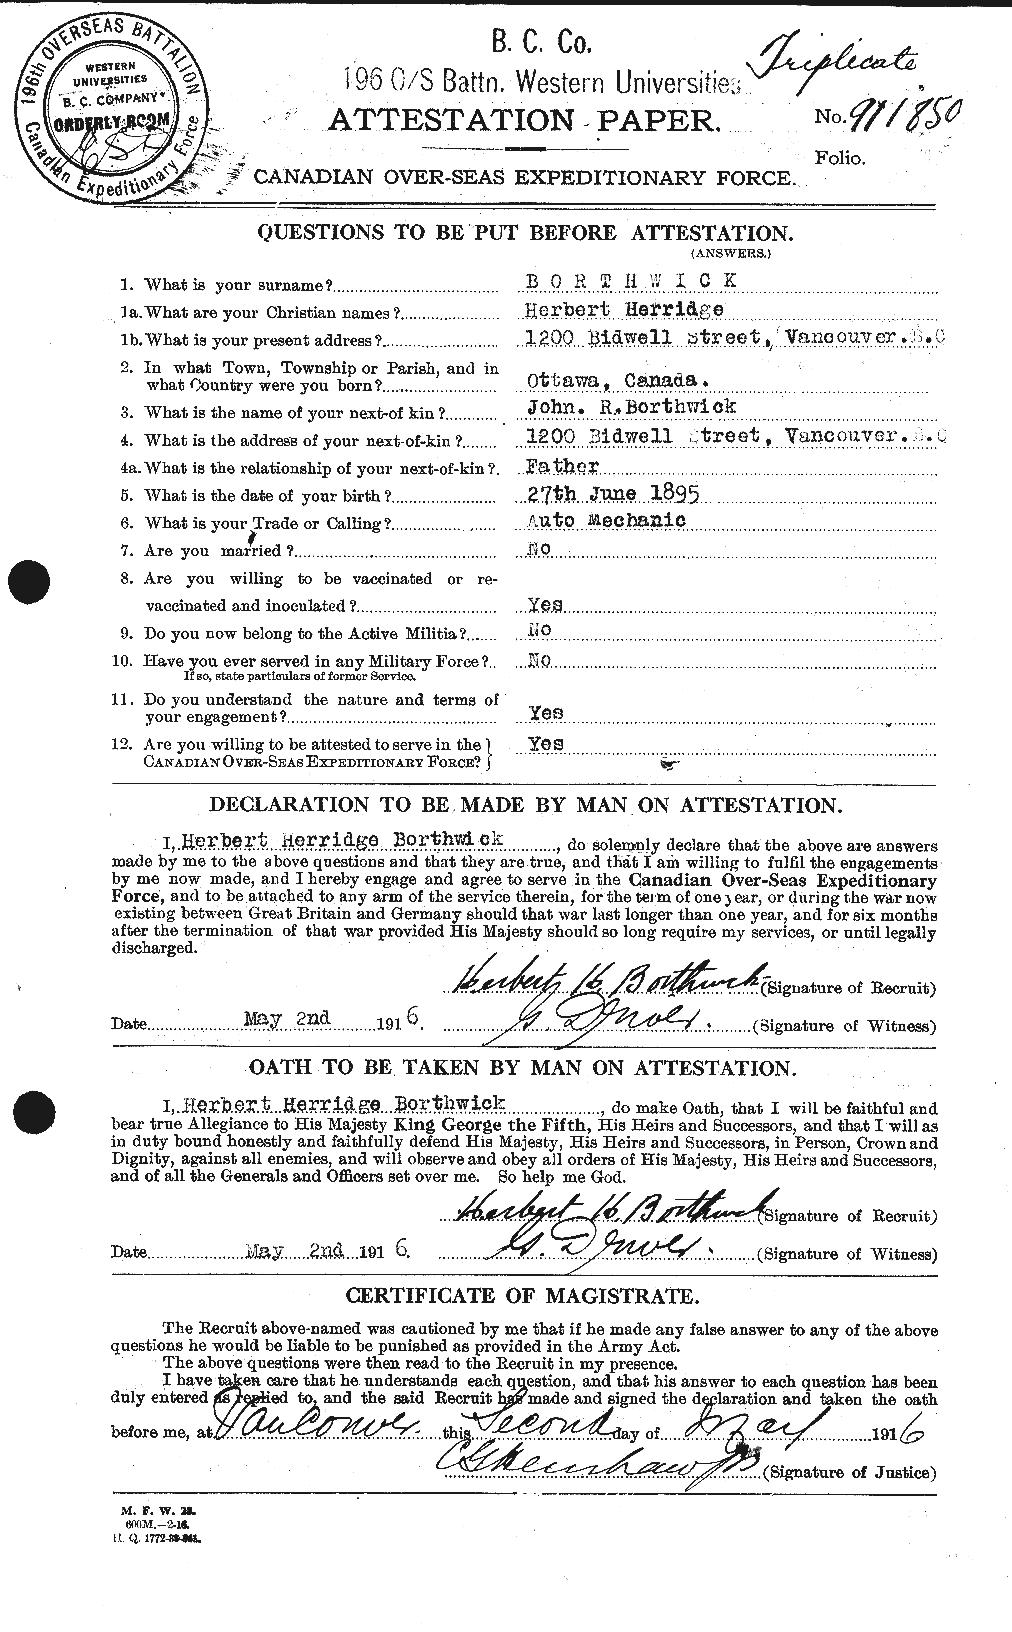 Dossiers du Personnel de la Première Guerre mondiale - CEC 253497a